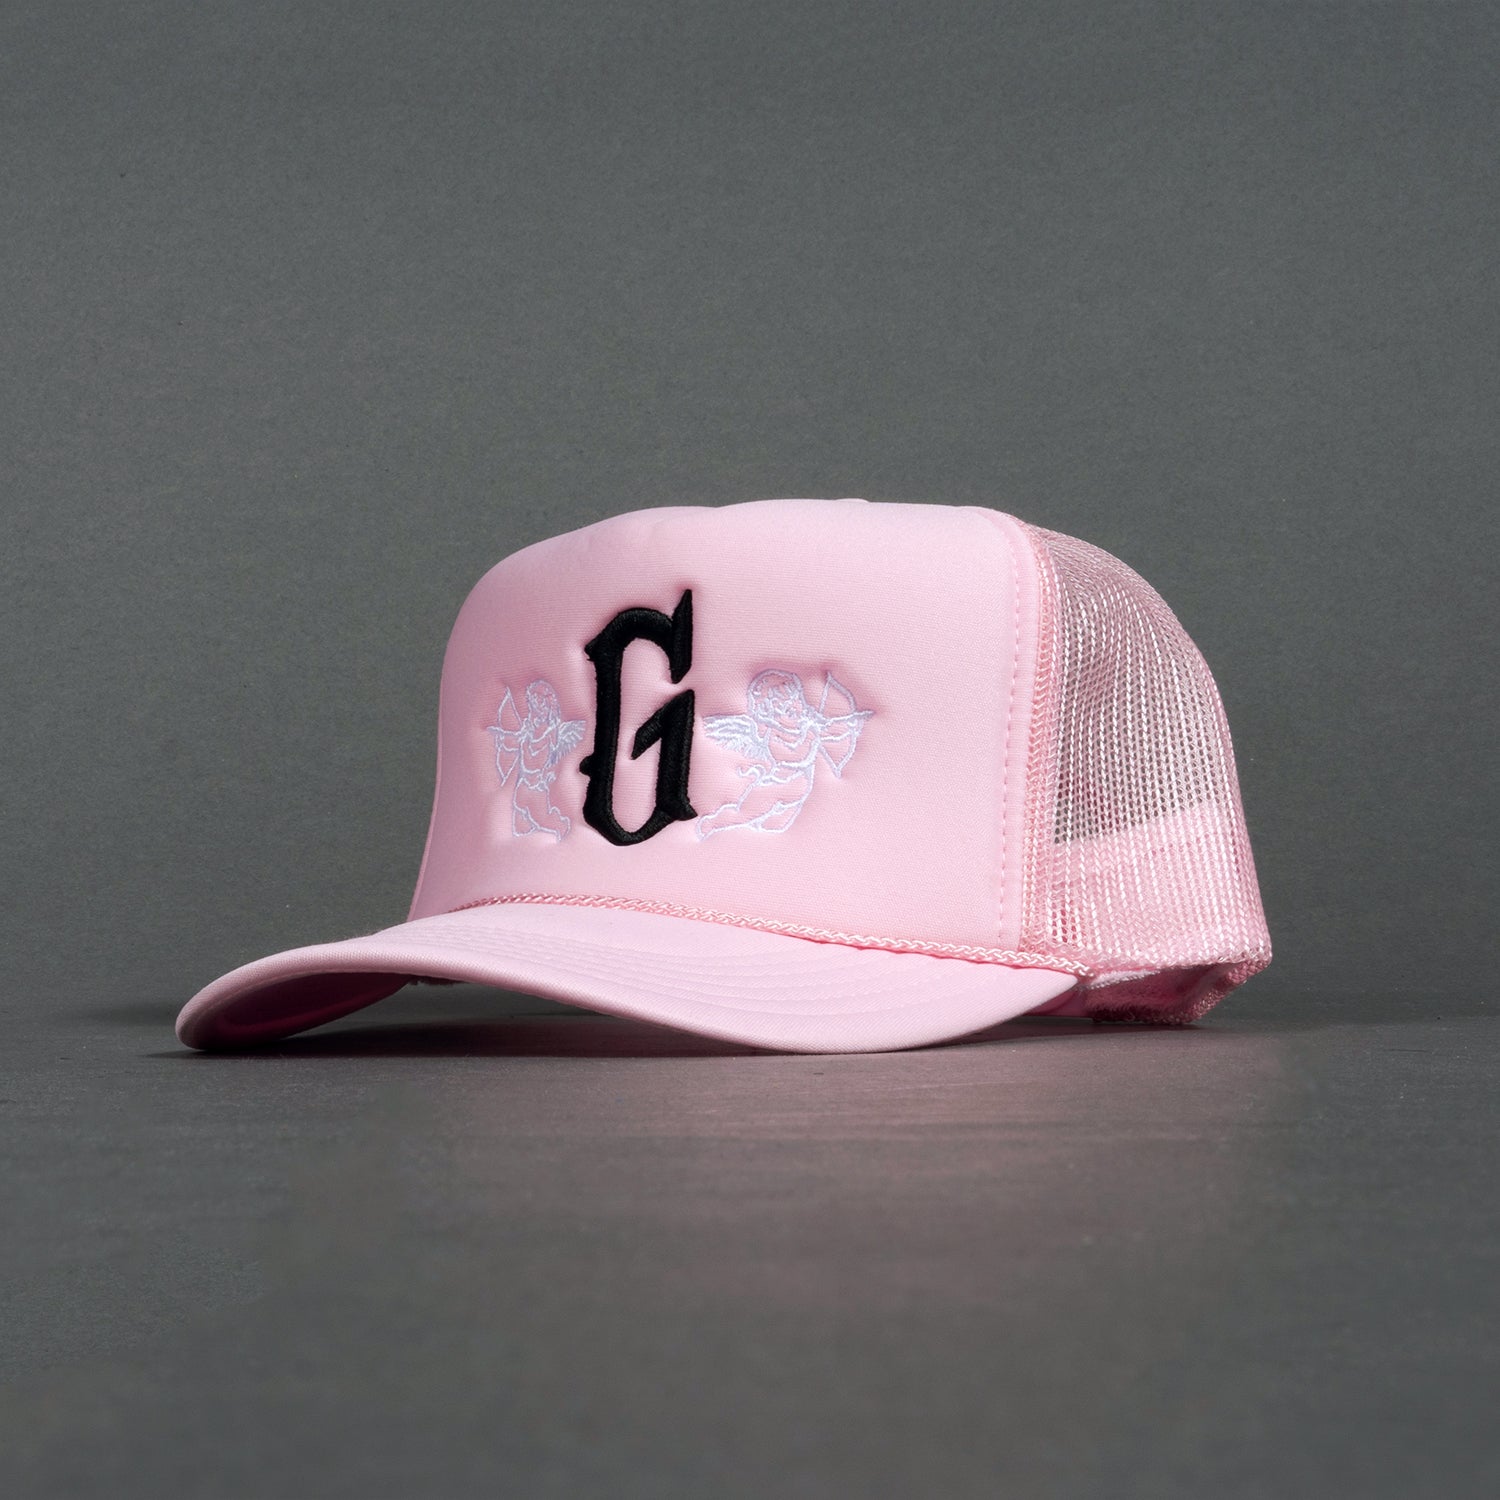 G Angel Trucker Hat - Pink